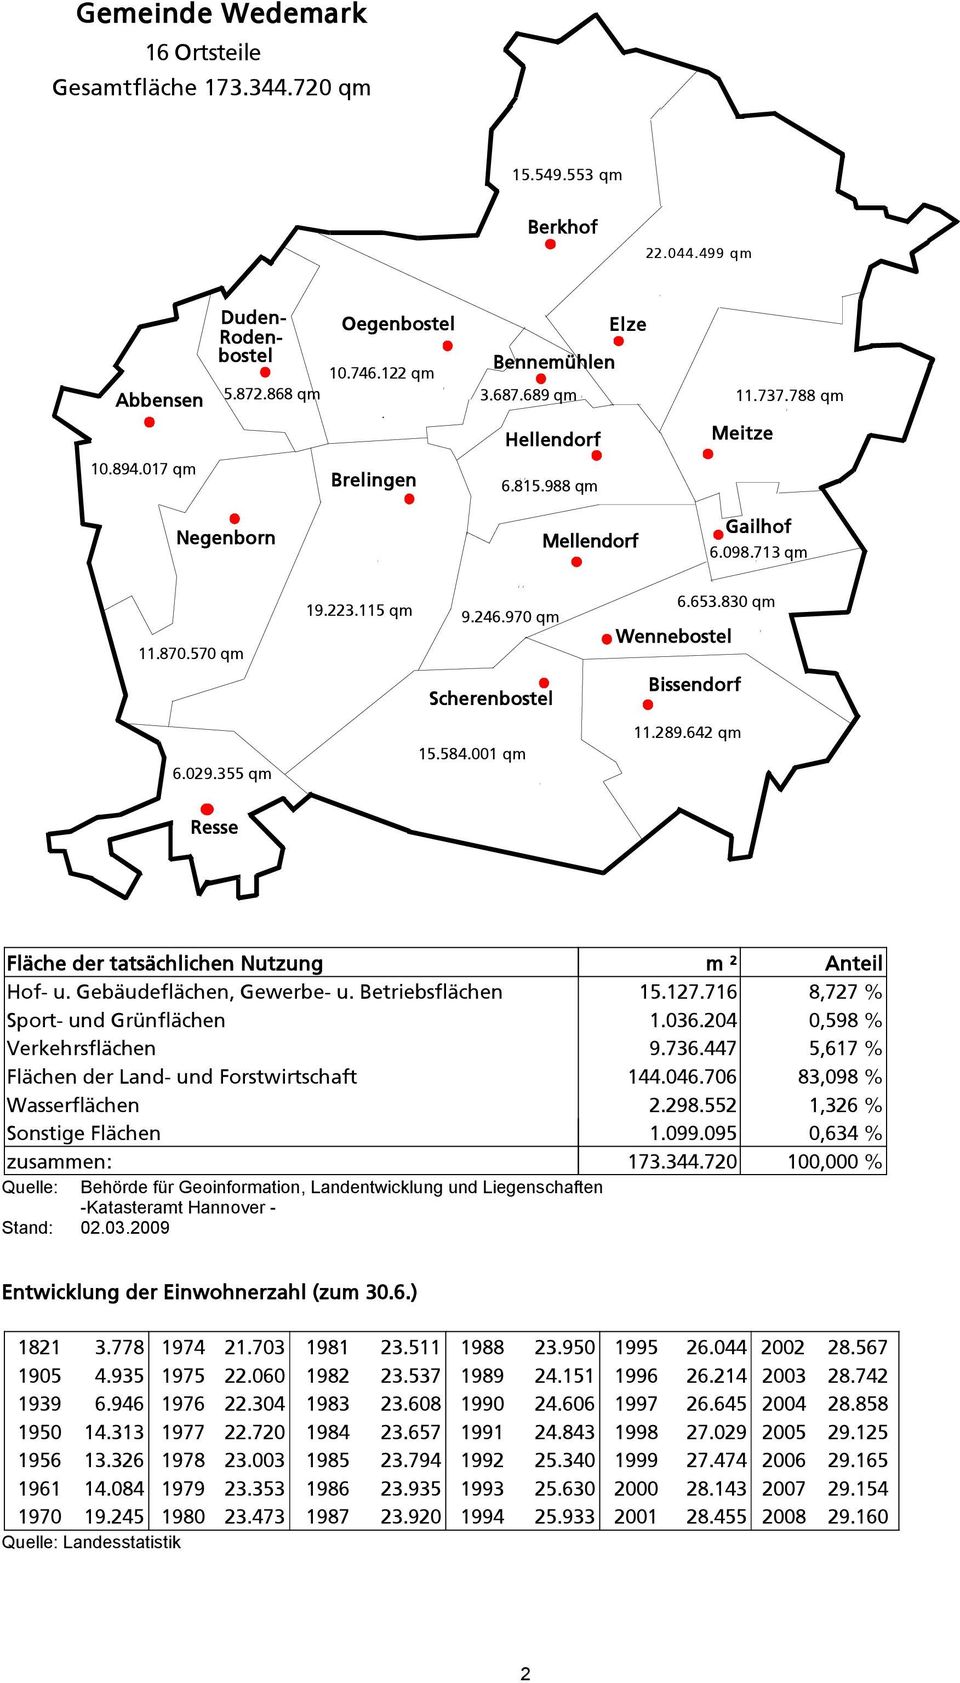 830 qm Wennebostel Scherenbostel Bissendorf 6.029.355 qm 15.584.001 qm 11.289.642 qm Resse Fläche der tatsächlichen Nutzung m ² Anteil Hof- u. Gebäudeflächen, Gewerbe- u. Betriebsflächen 15.127.